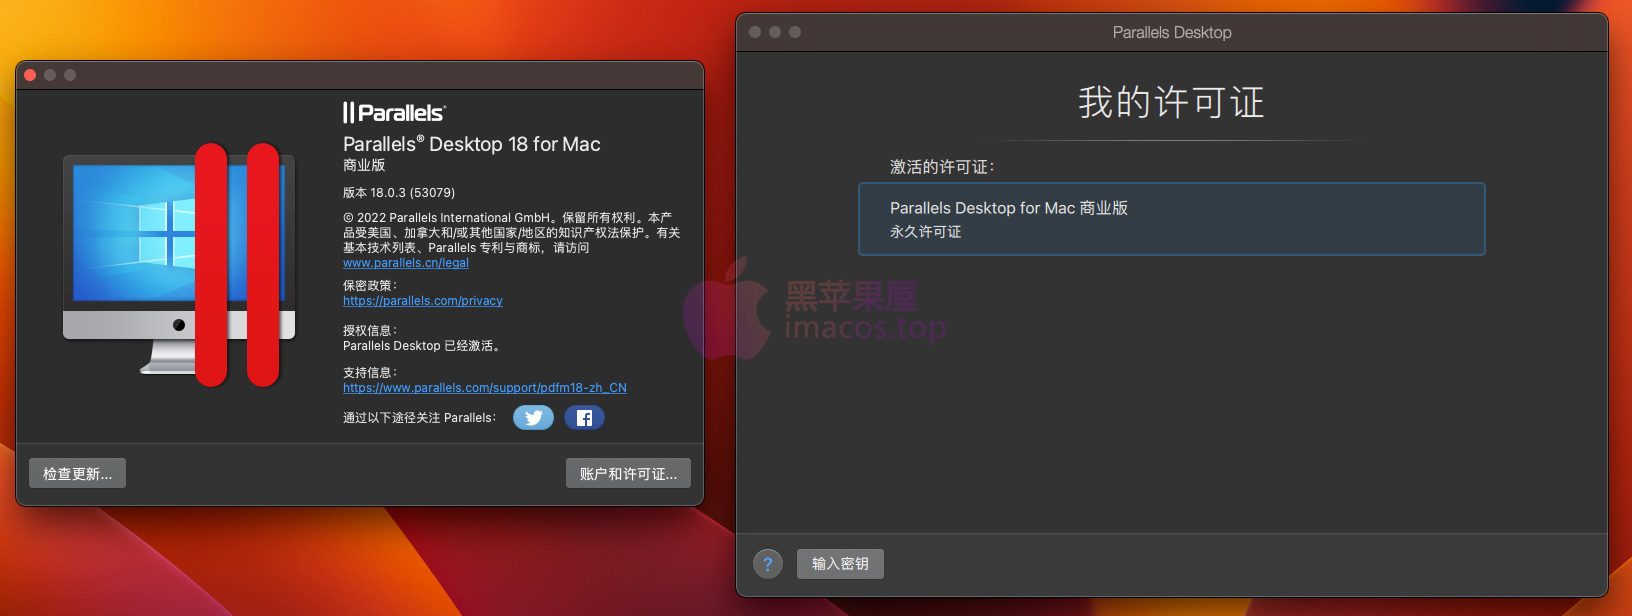 Parallels Desktop 18.0.3 53079 永久许可证和谐版本(适用于英特尔处理器及M1/2)